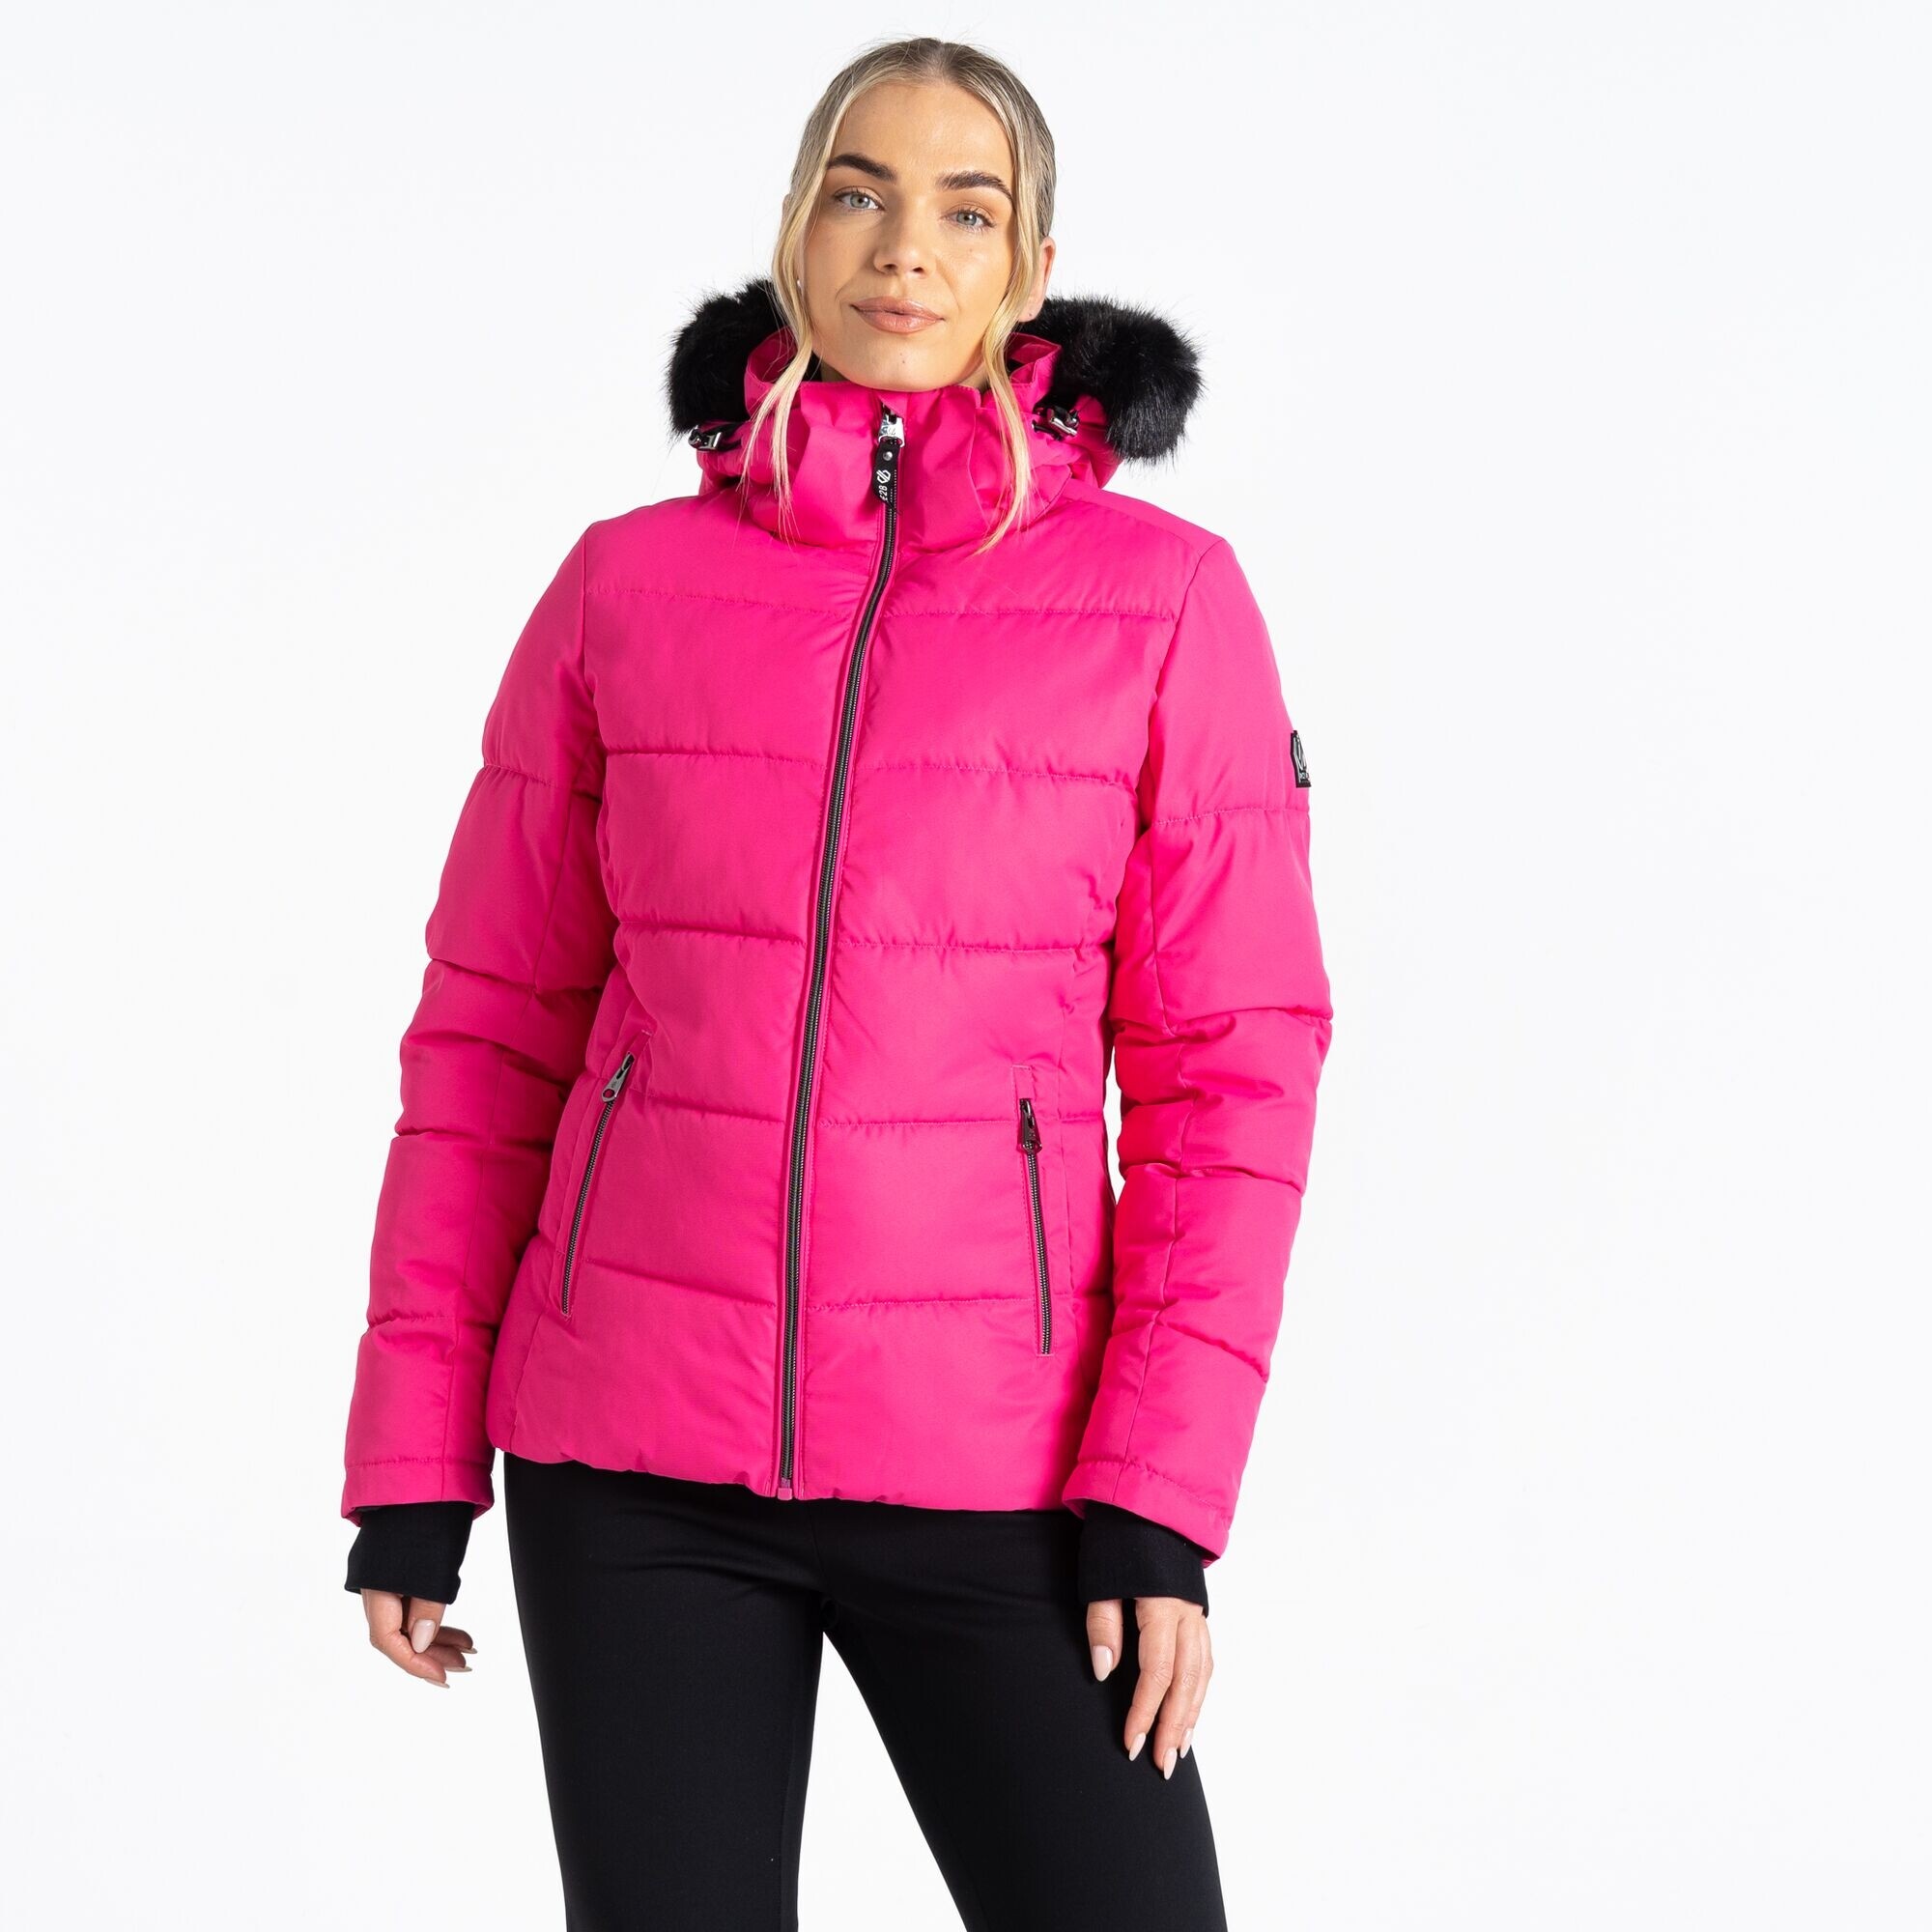 Dámská lyžařská bunda Glamorize IV DWP576-829 neon růžová - Dare2B 46